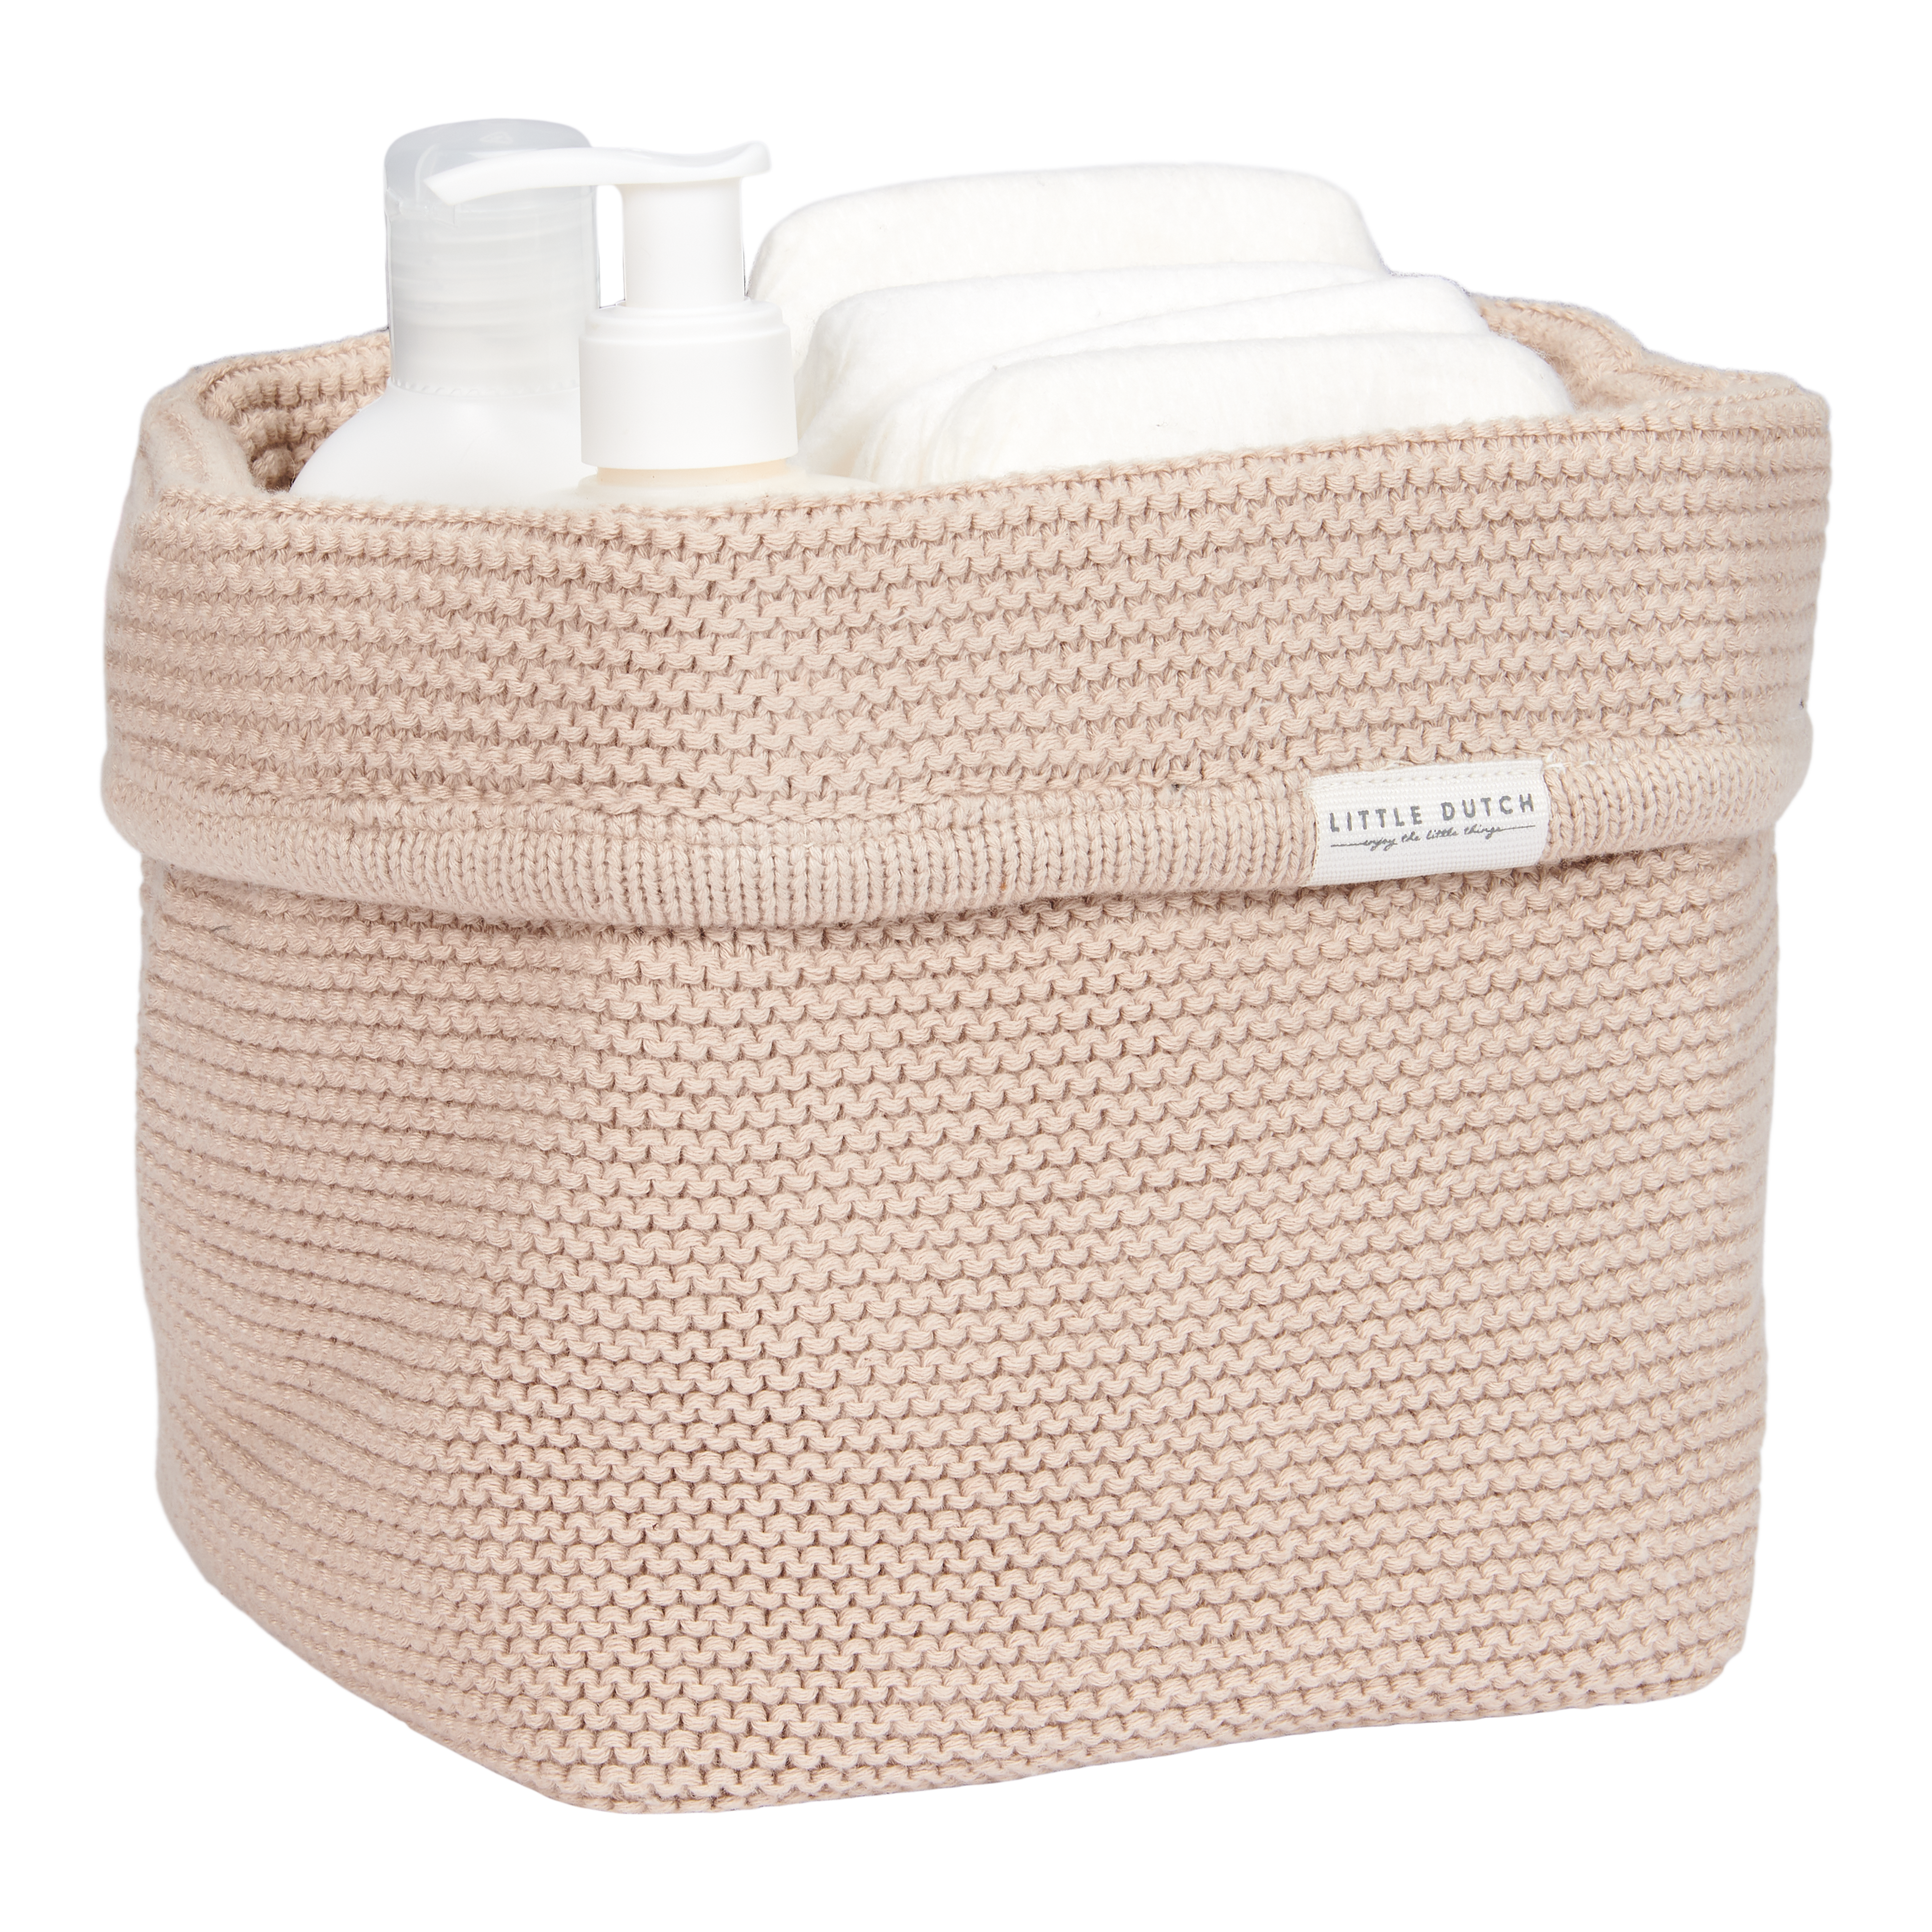 TE30423026 – Knitted storage basket small Beige – Newborn Naturals (1)